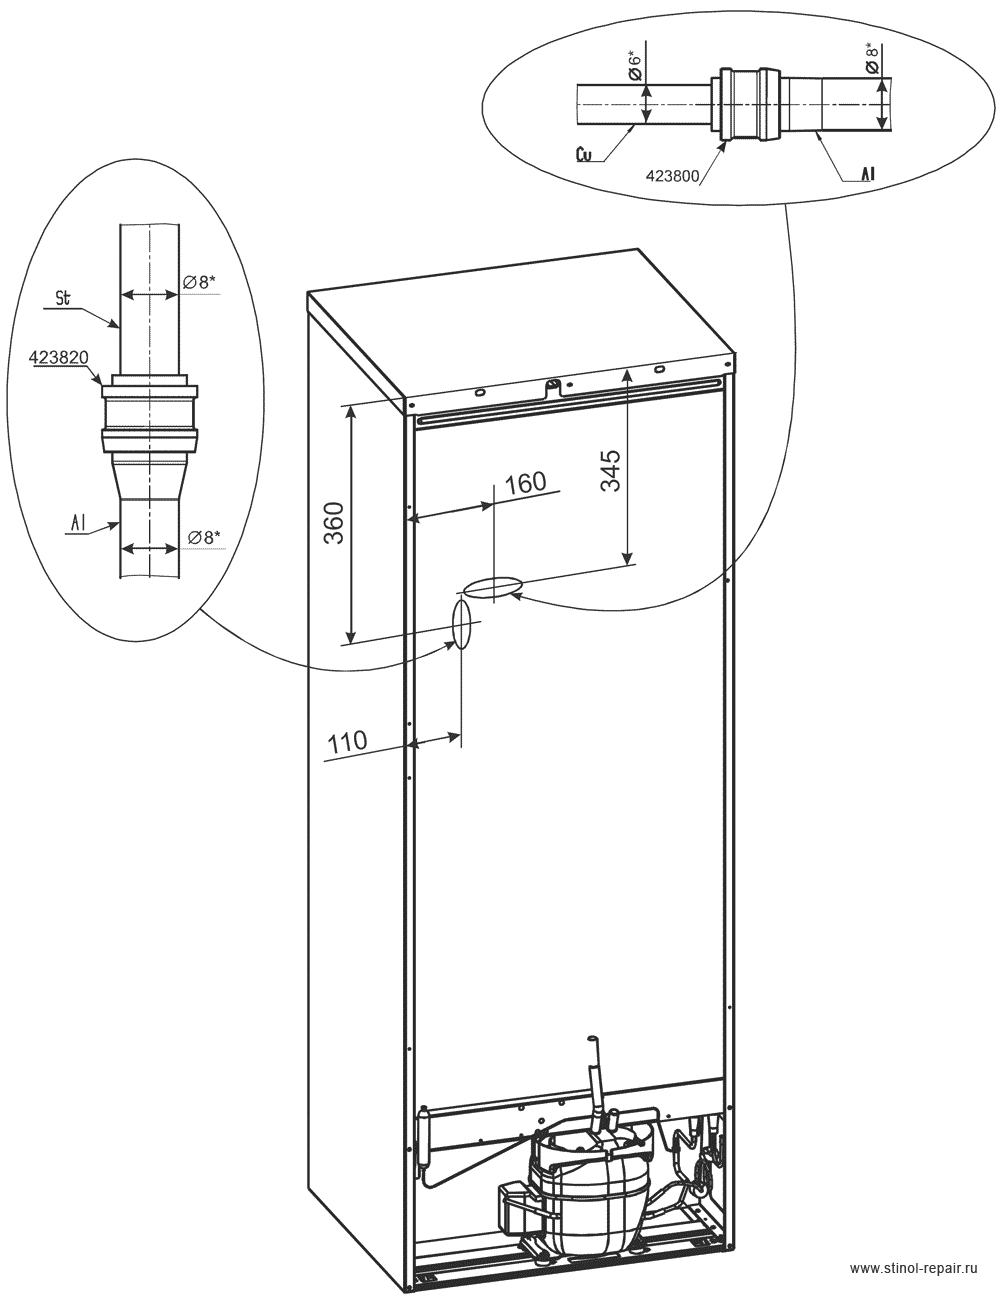 Расположение локринговых соединений холодильника Стинол-205Q - первоначальный вариант.